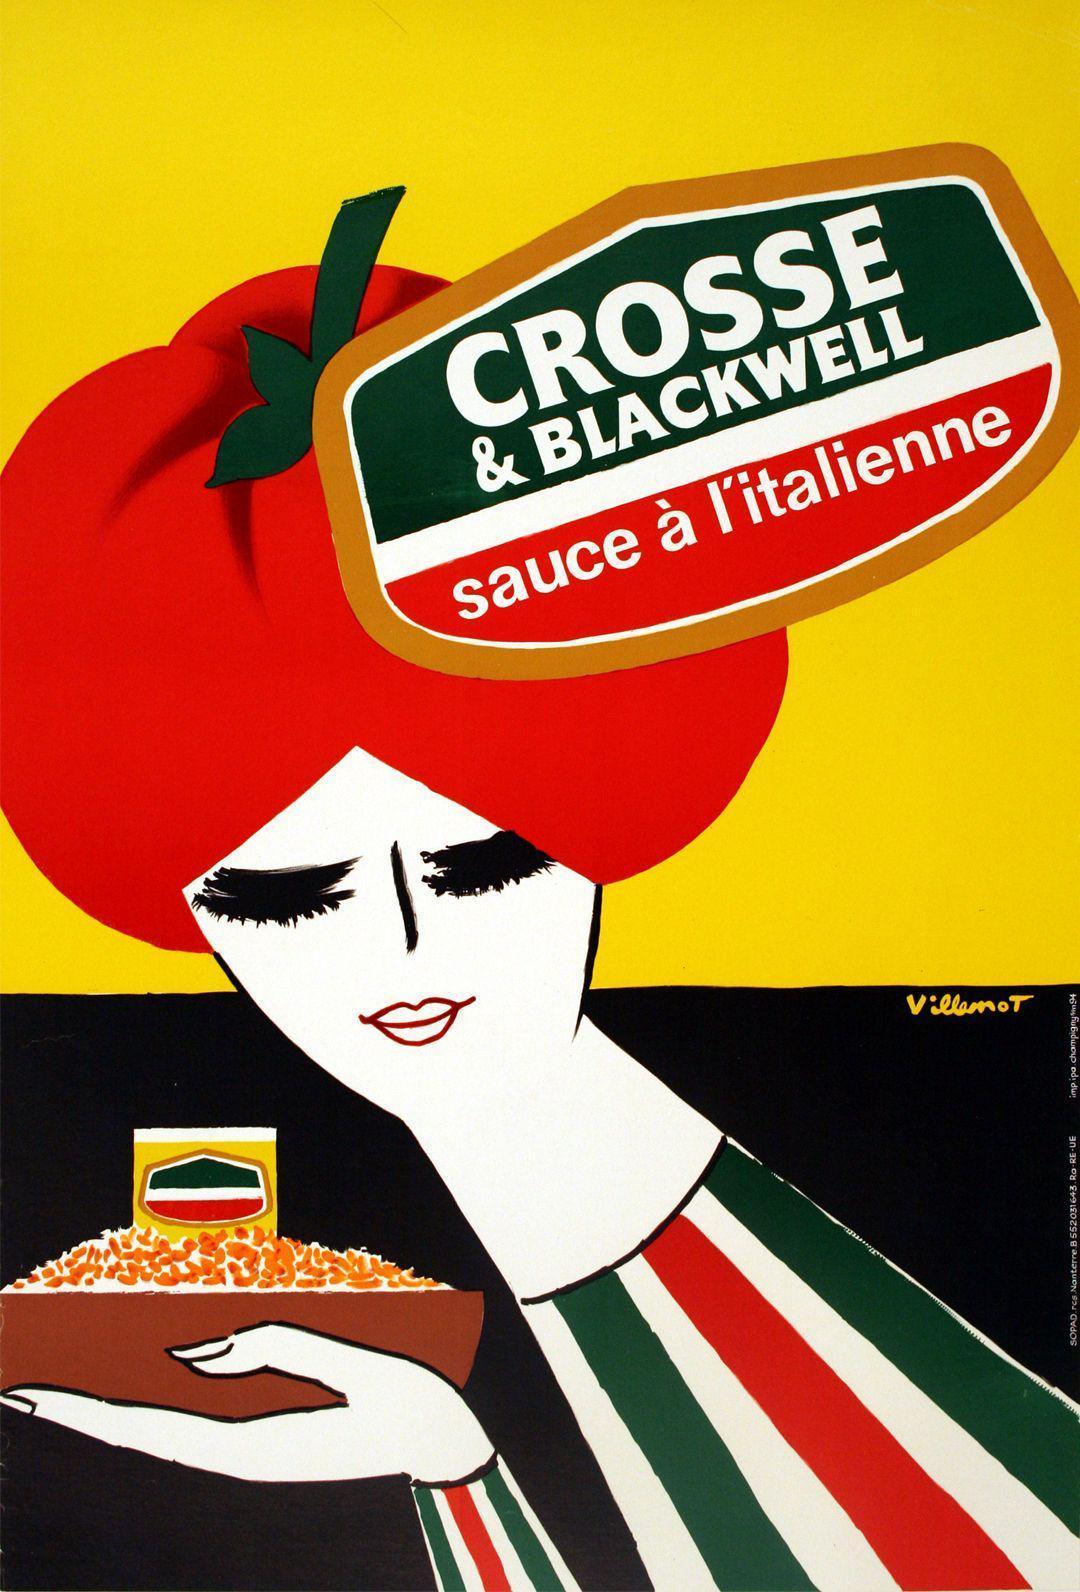 Original Bernard Villemot Poster 1980 for Cross and Blackwell Sauce